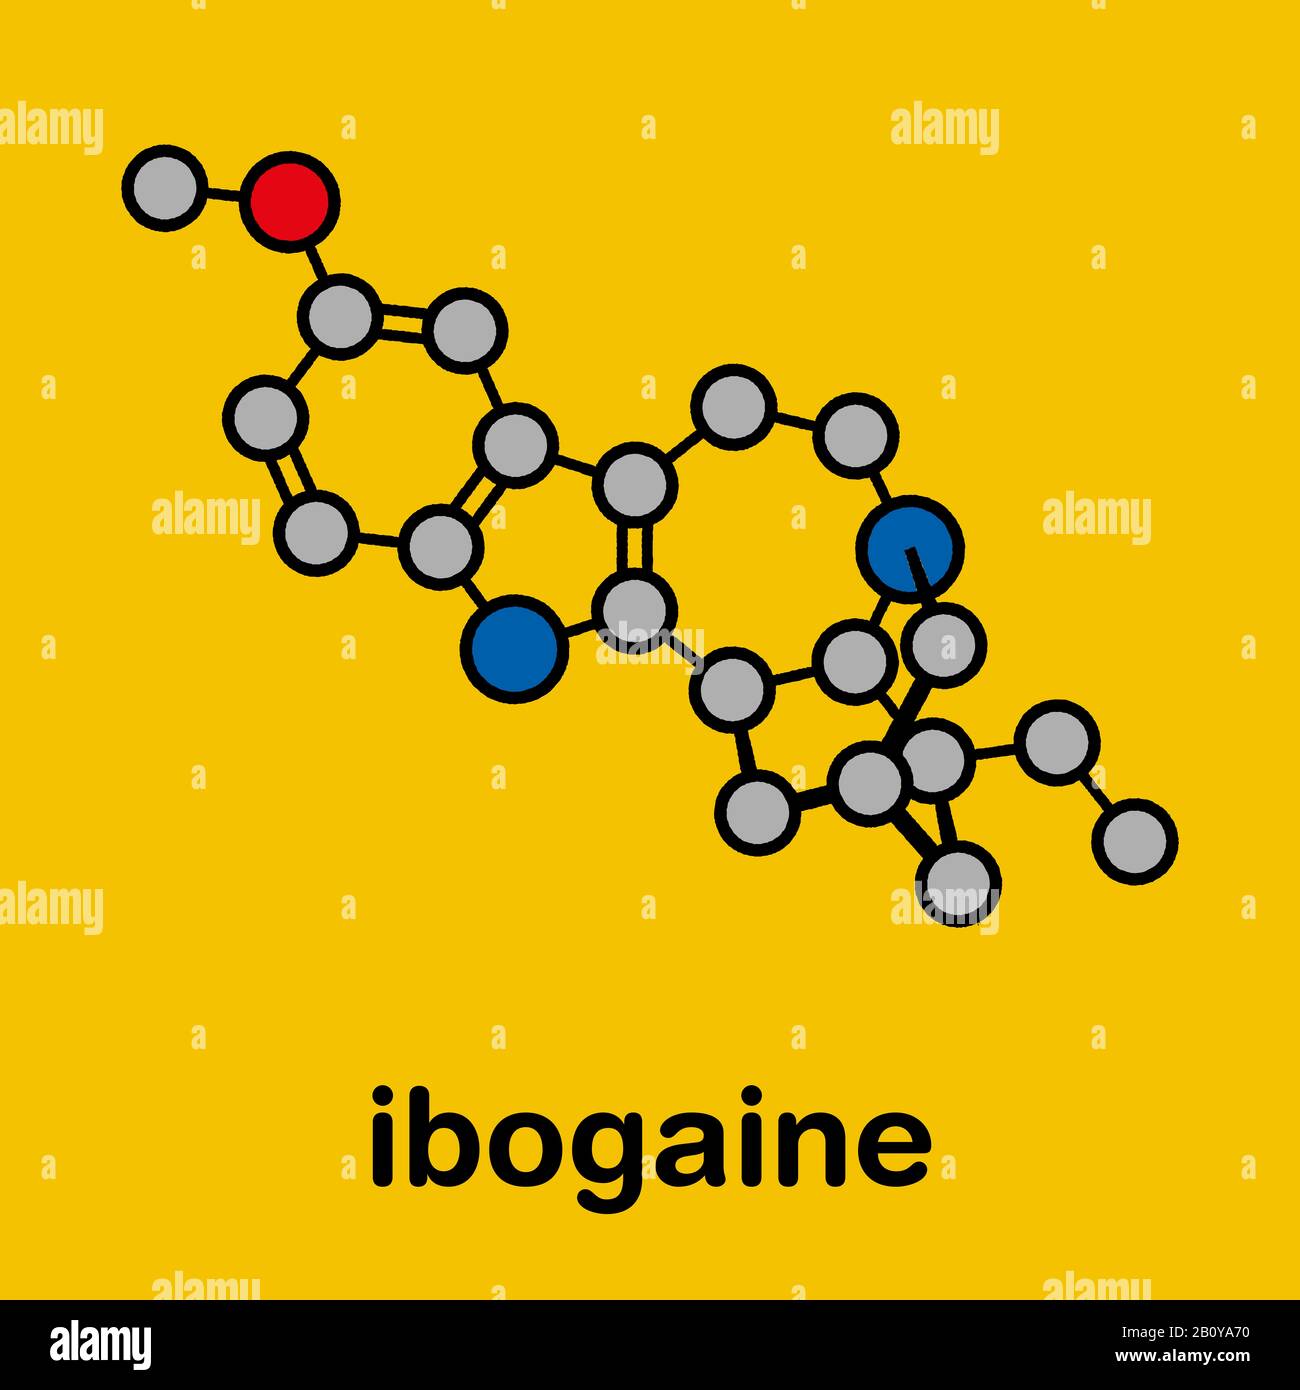 Ibogaine alkaloid molecule, illustration Stock Photo